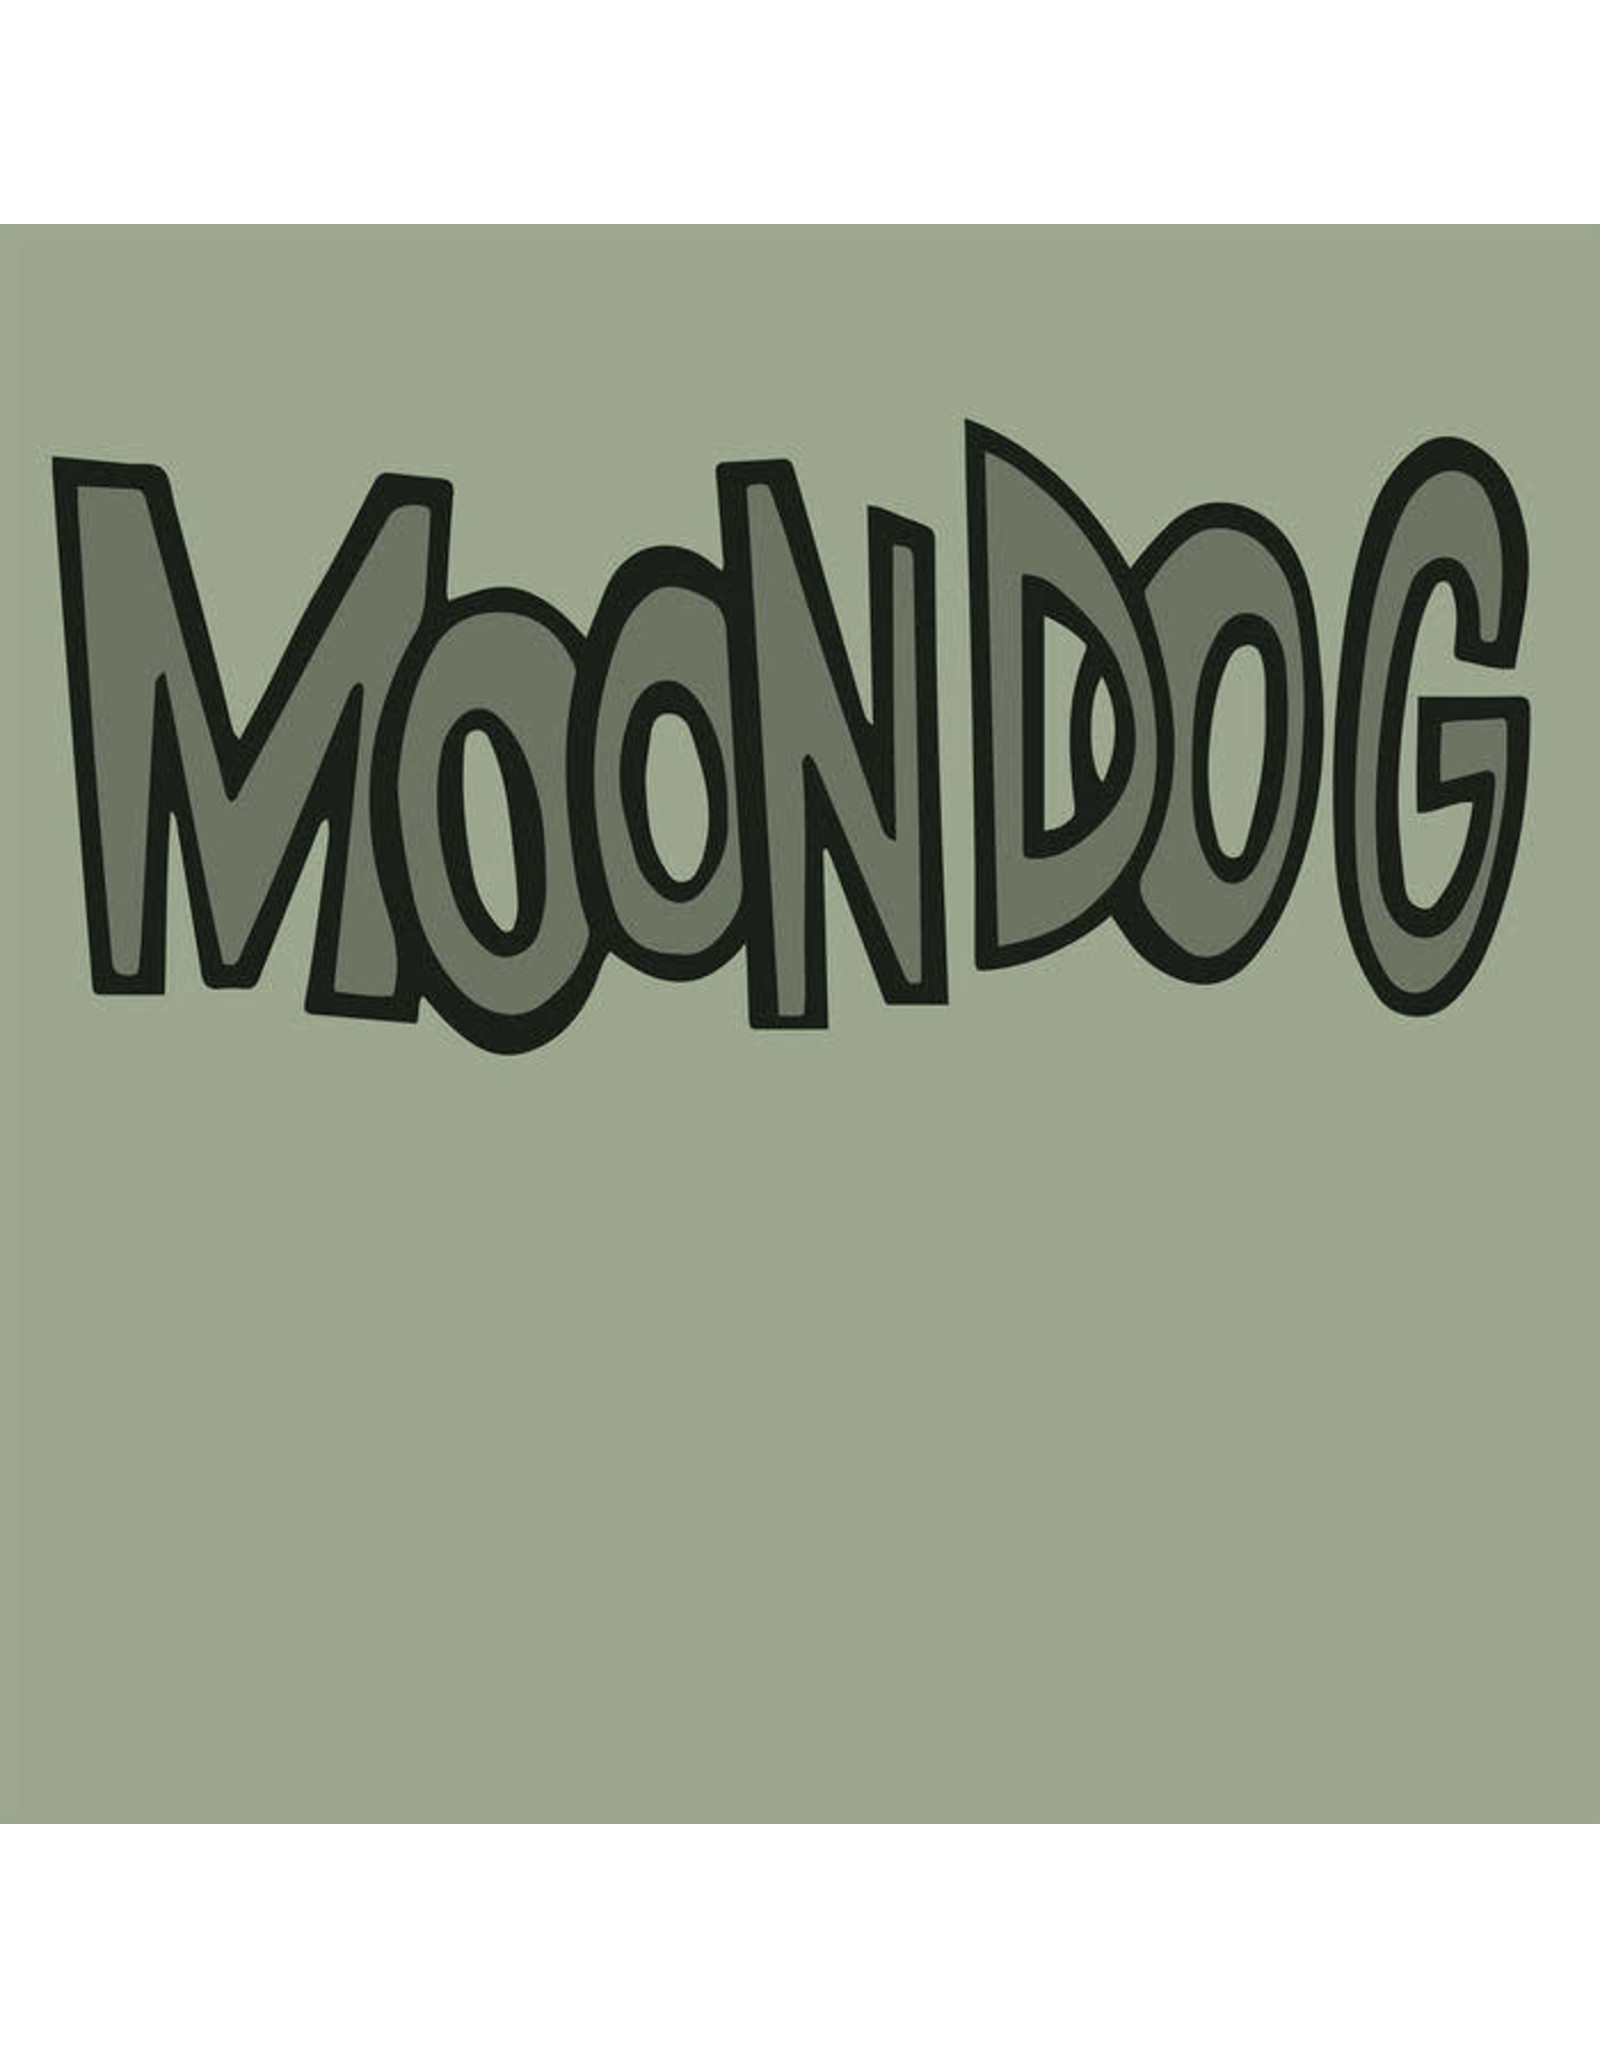 Primitiv Moondog: Moondog and His Friends LP